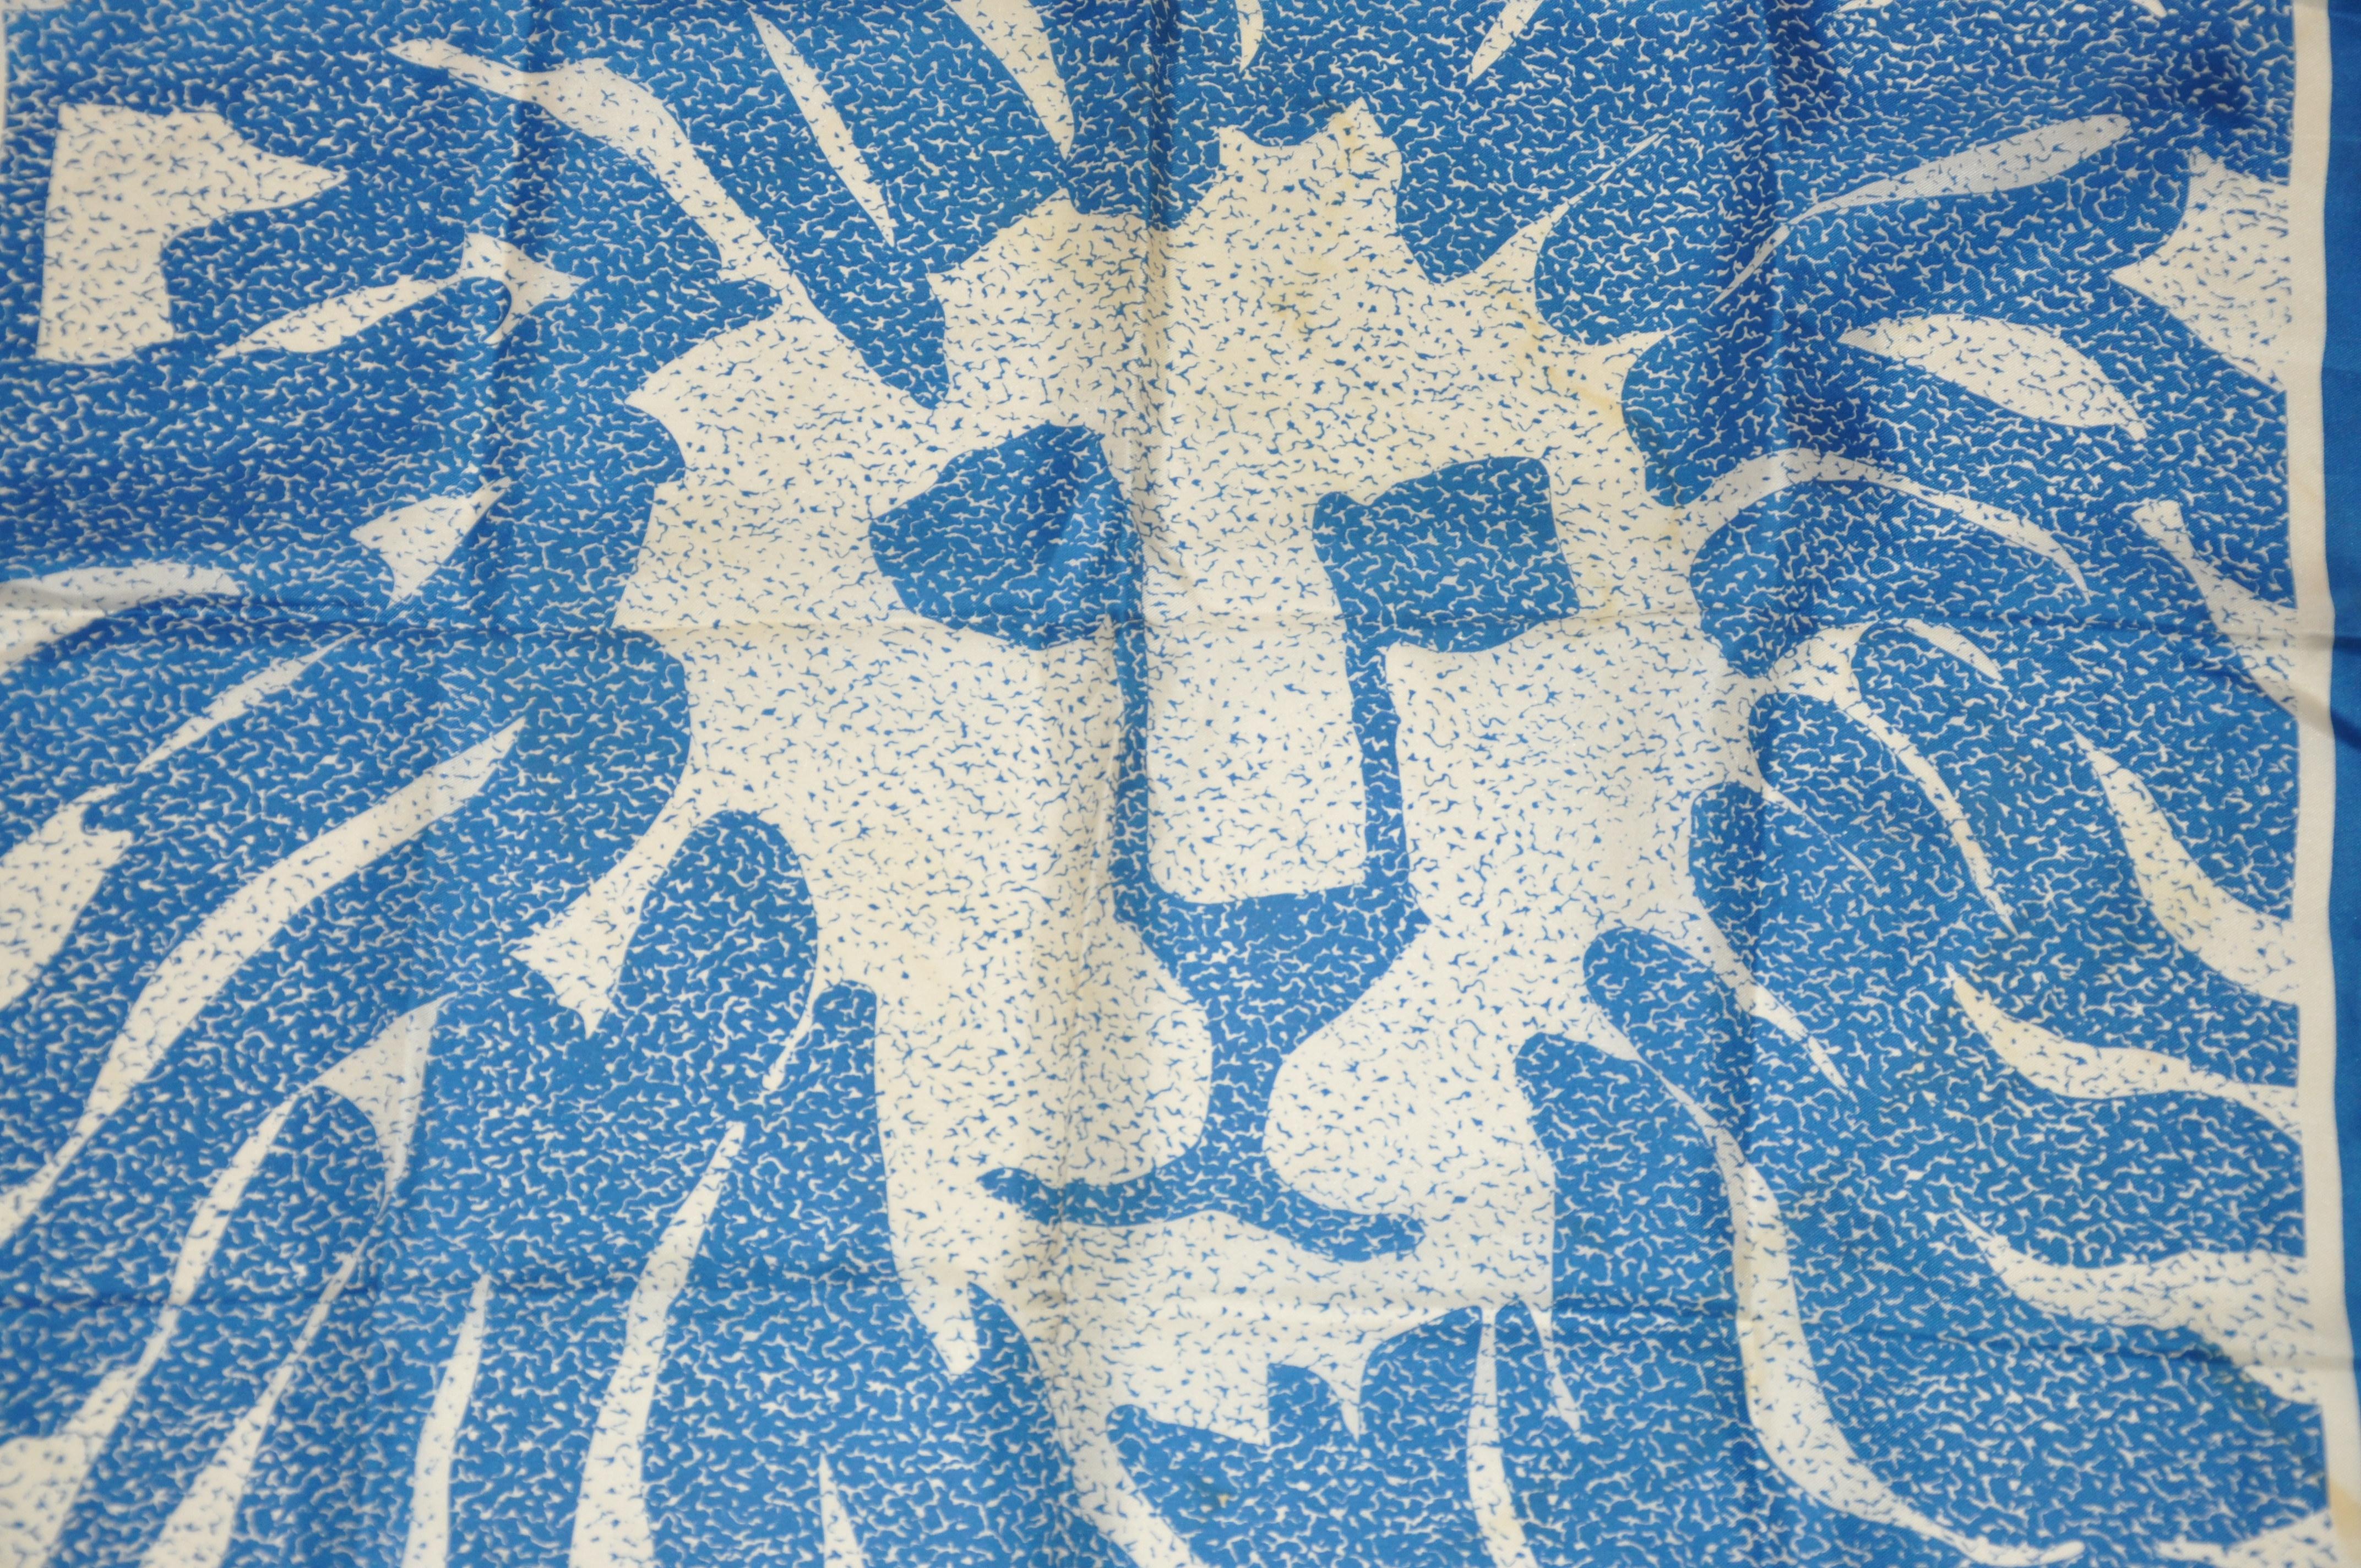      Anne Klein für Robinson & Golluber lapisblauer und elfenbeinfarbener Logo-Seidenschal mit handgerollten Kanten, Maße: 26 x 26 cm. Hergestellt in Japan.